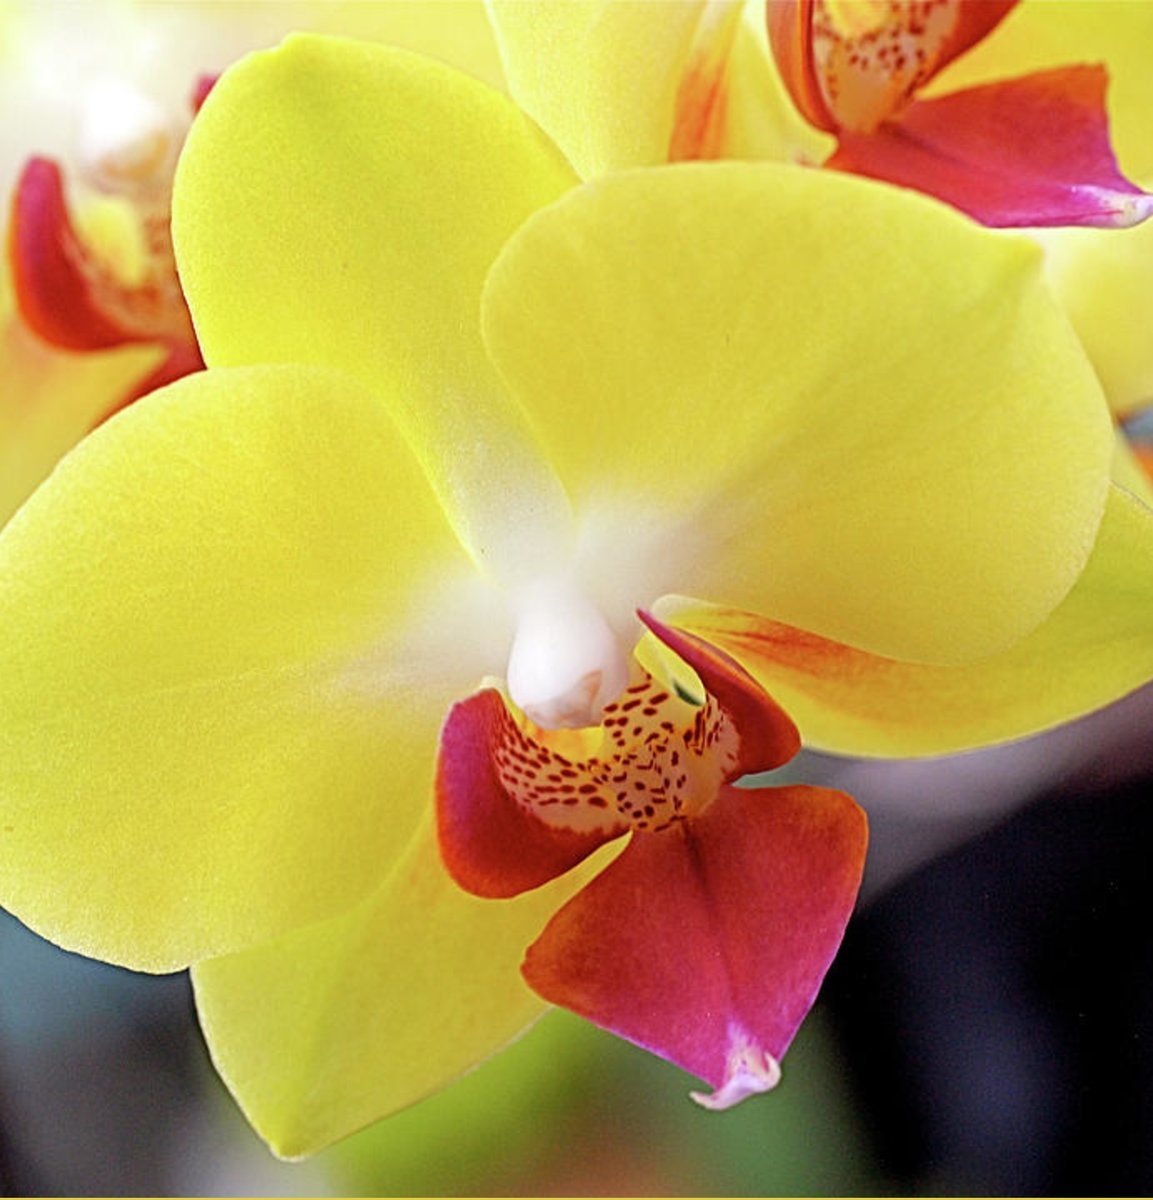 орхидея желтого цвета фото